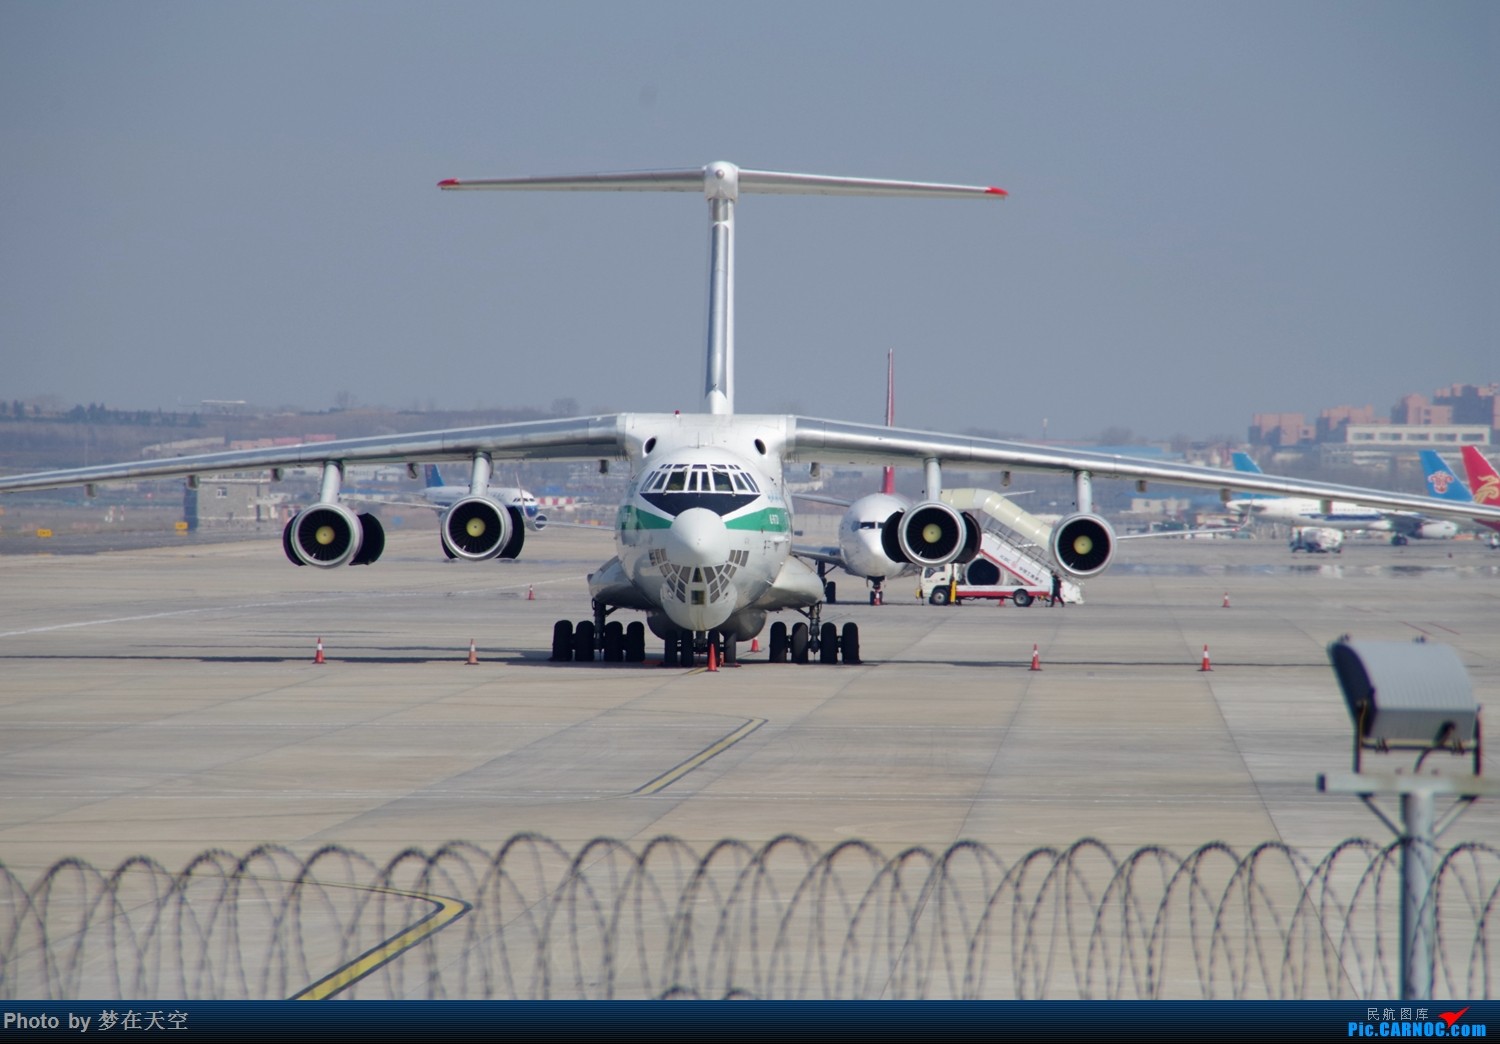 أكبر و أضخم موسوعة صور لطائرات النقل و الشحن الجزائرية AAF- iL 76/ iL 78 - صفحة 19 201504041016052868